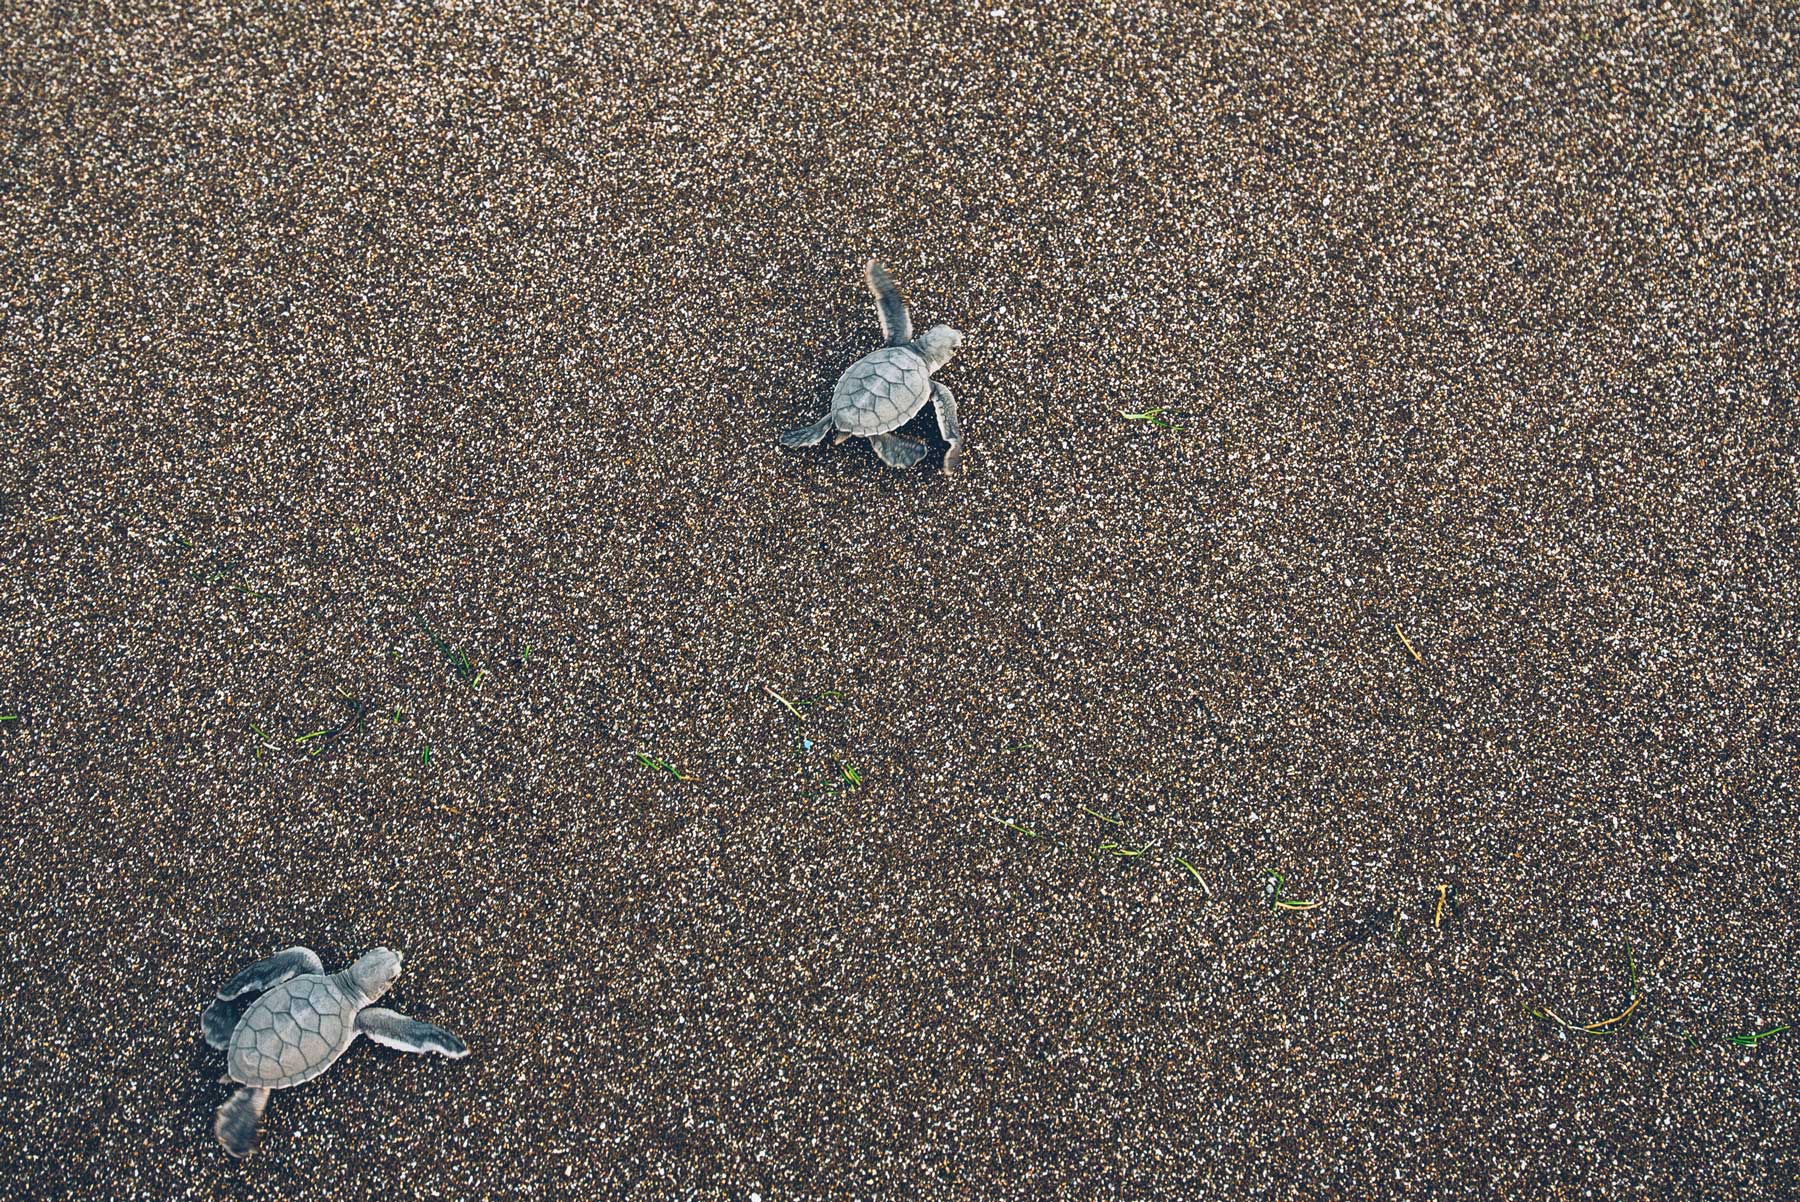 Bébés tortues, Mayotte